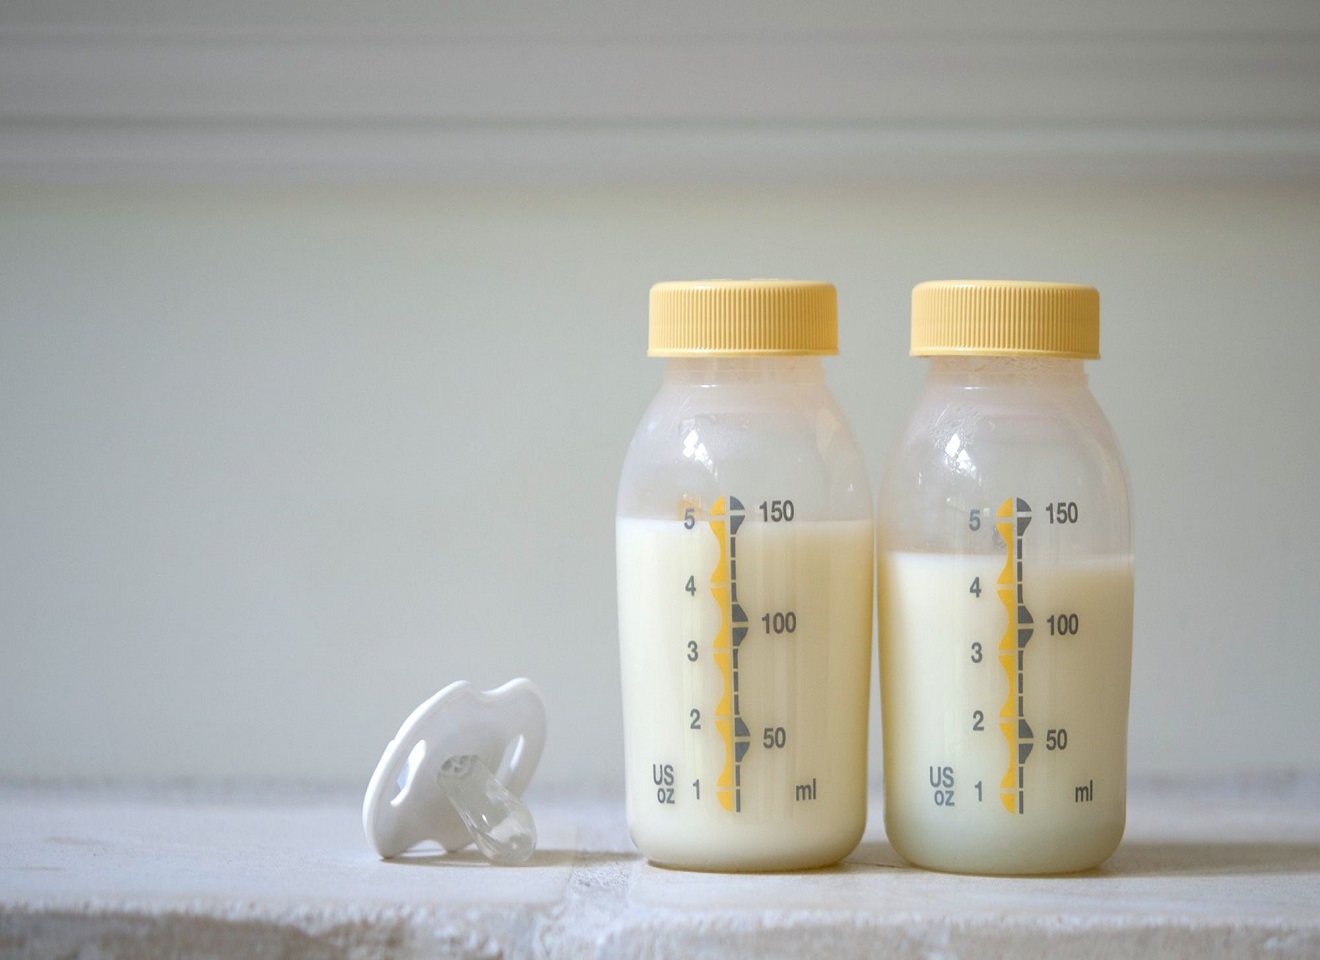 Các bí quyết “thần thánh” giúp bảo quản sữa mẹ hoàn hảo